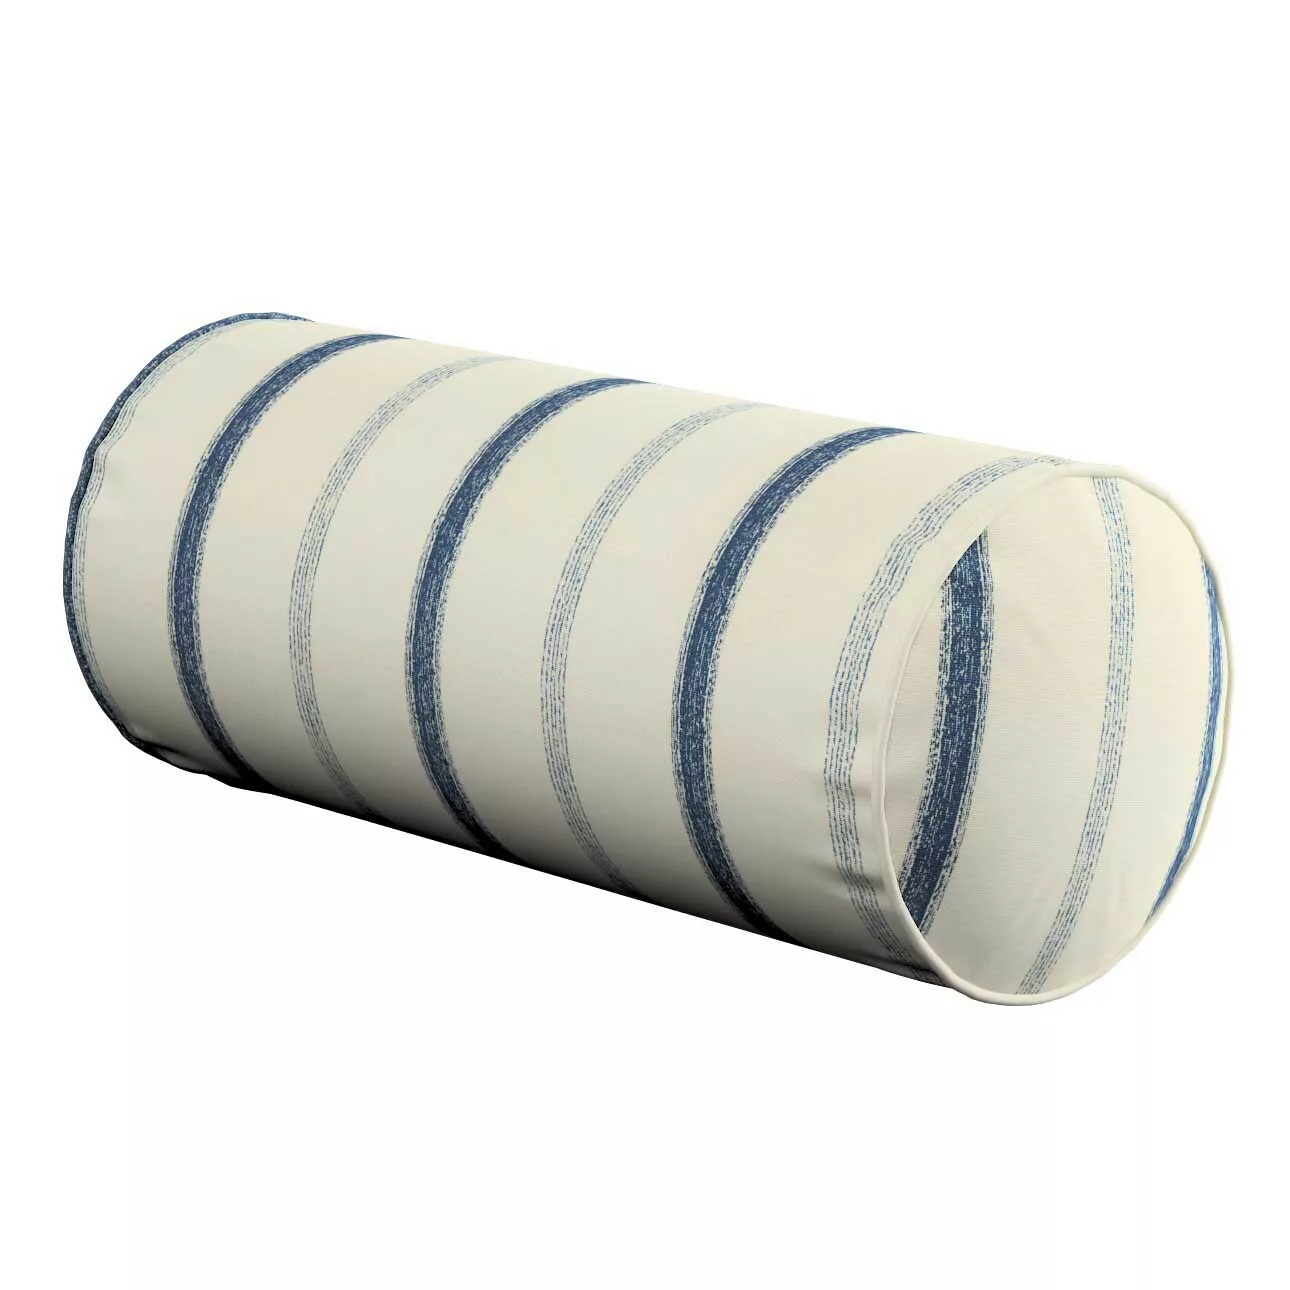 Einfache Nackenrolle, creme- blau gestreift, Ø 16 x 40 cm, Avinon (129-66) günstig online kaufen